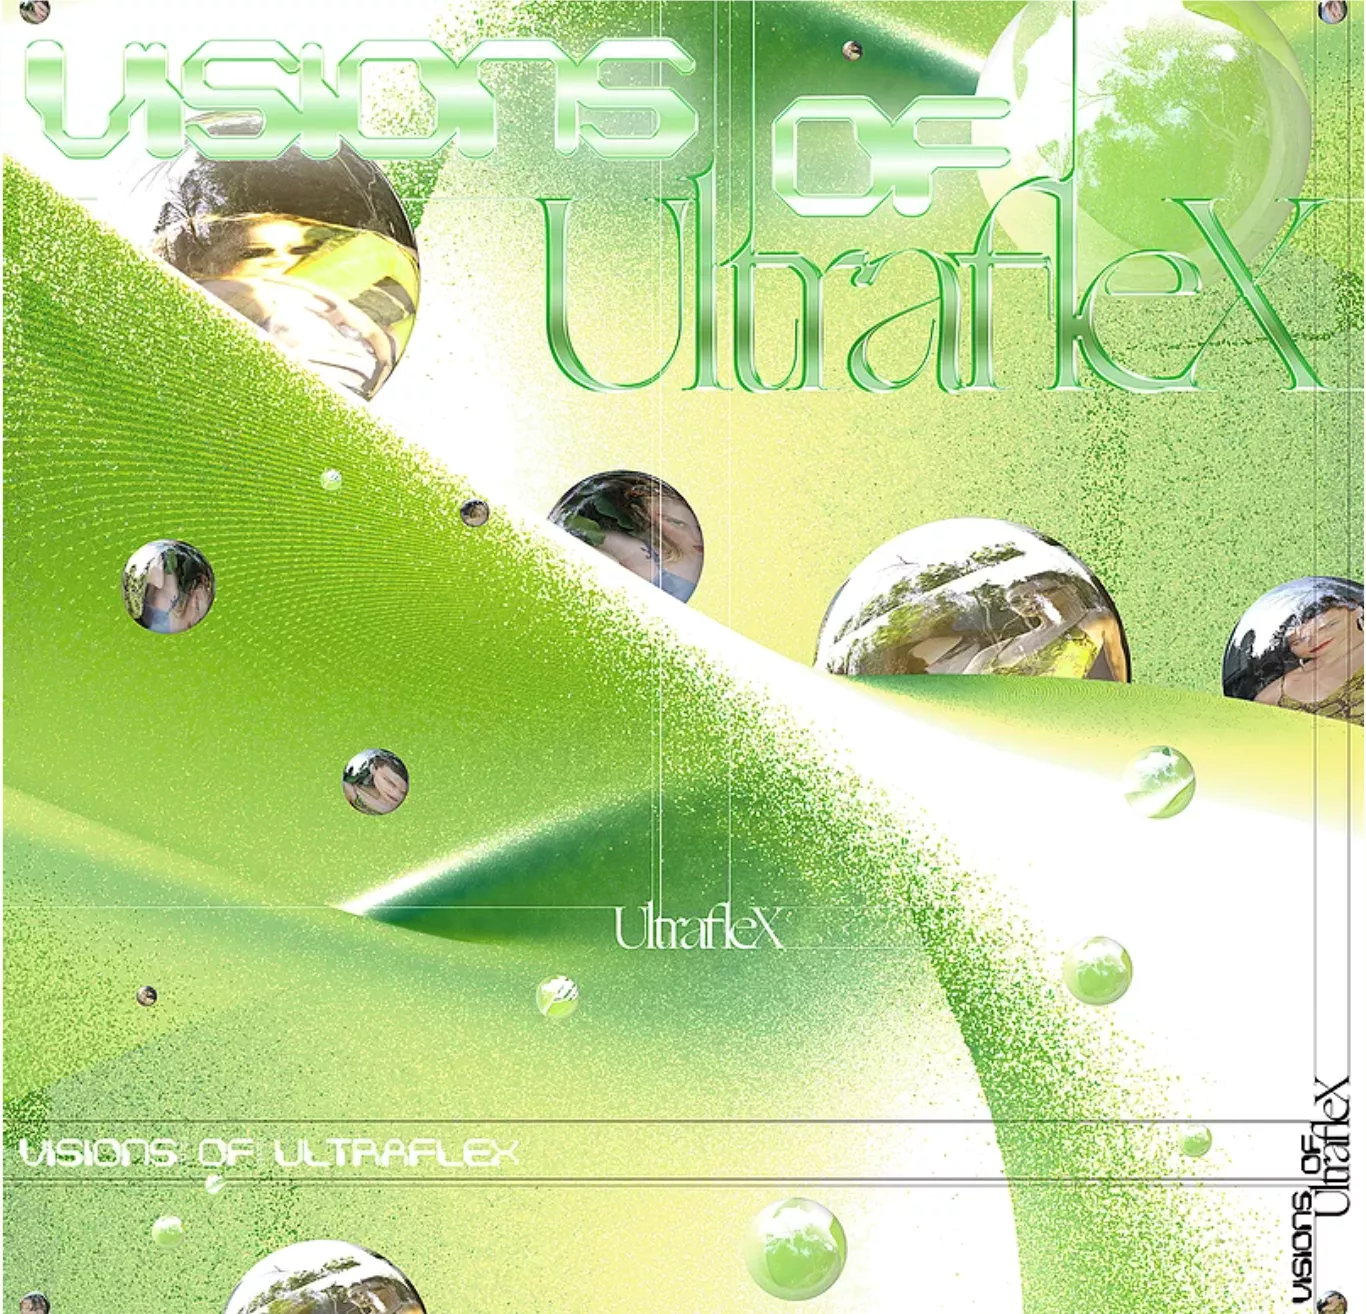 Visions of Ultraflex - Ultraflex